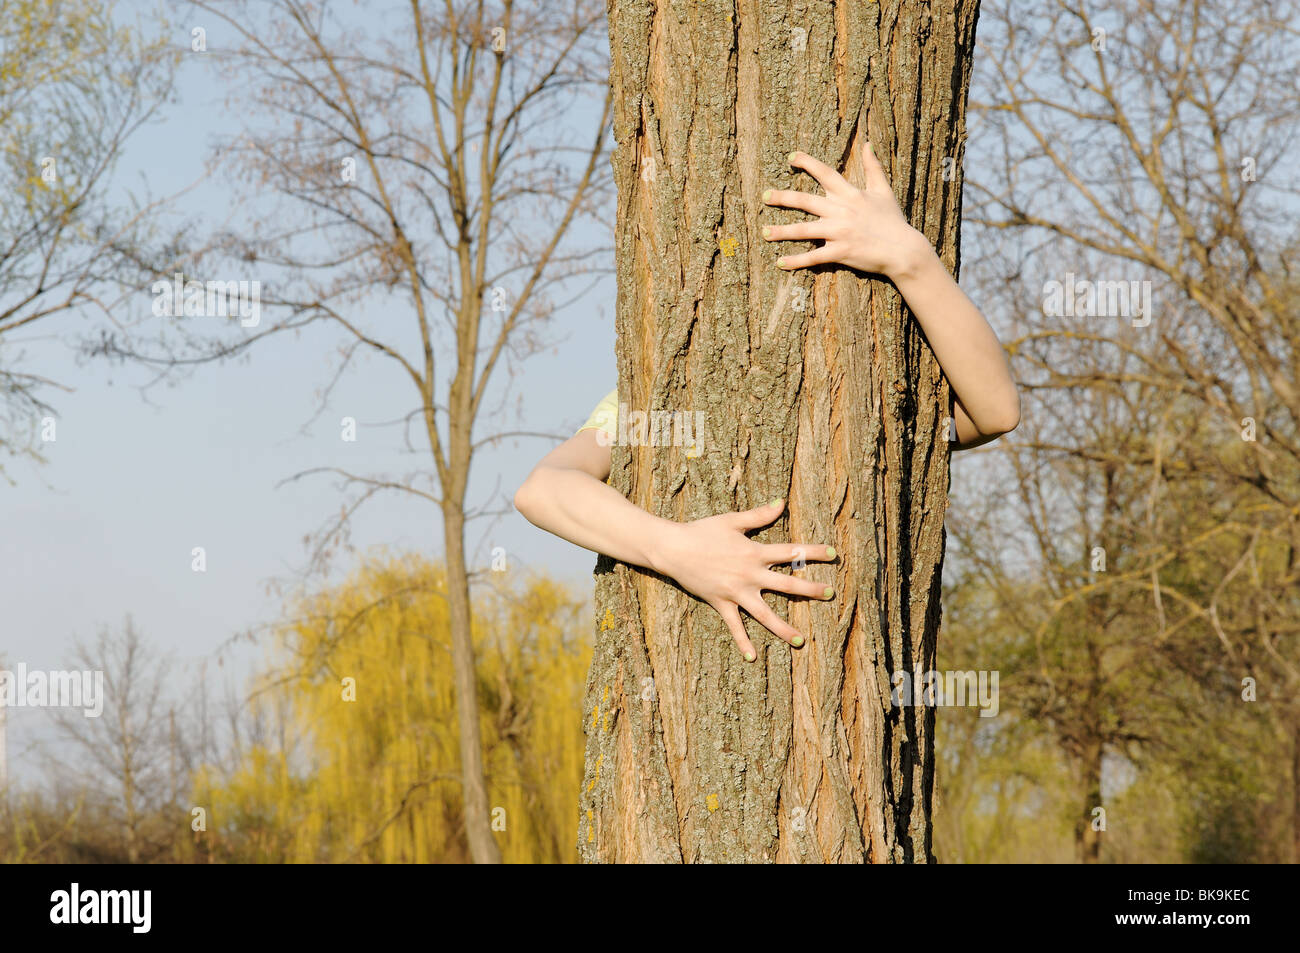 Arme umarmen Baum - Konzept von menschlicher Obhut für den Naturschutz Stockfoto